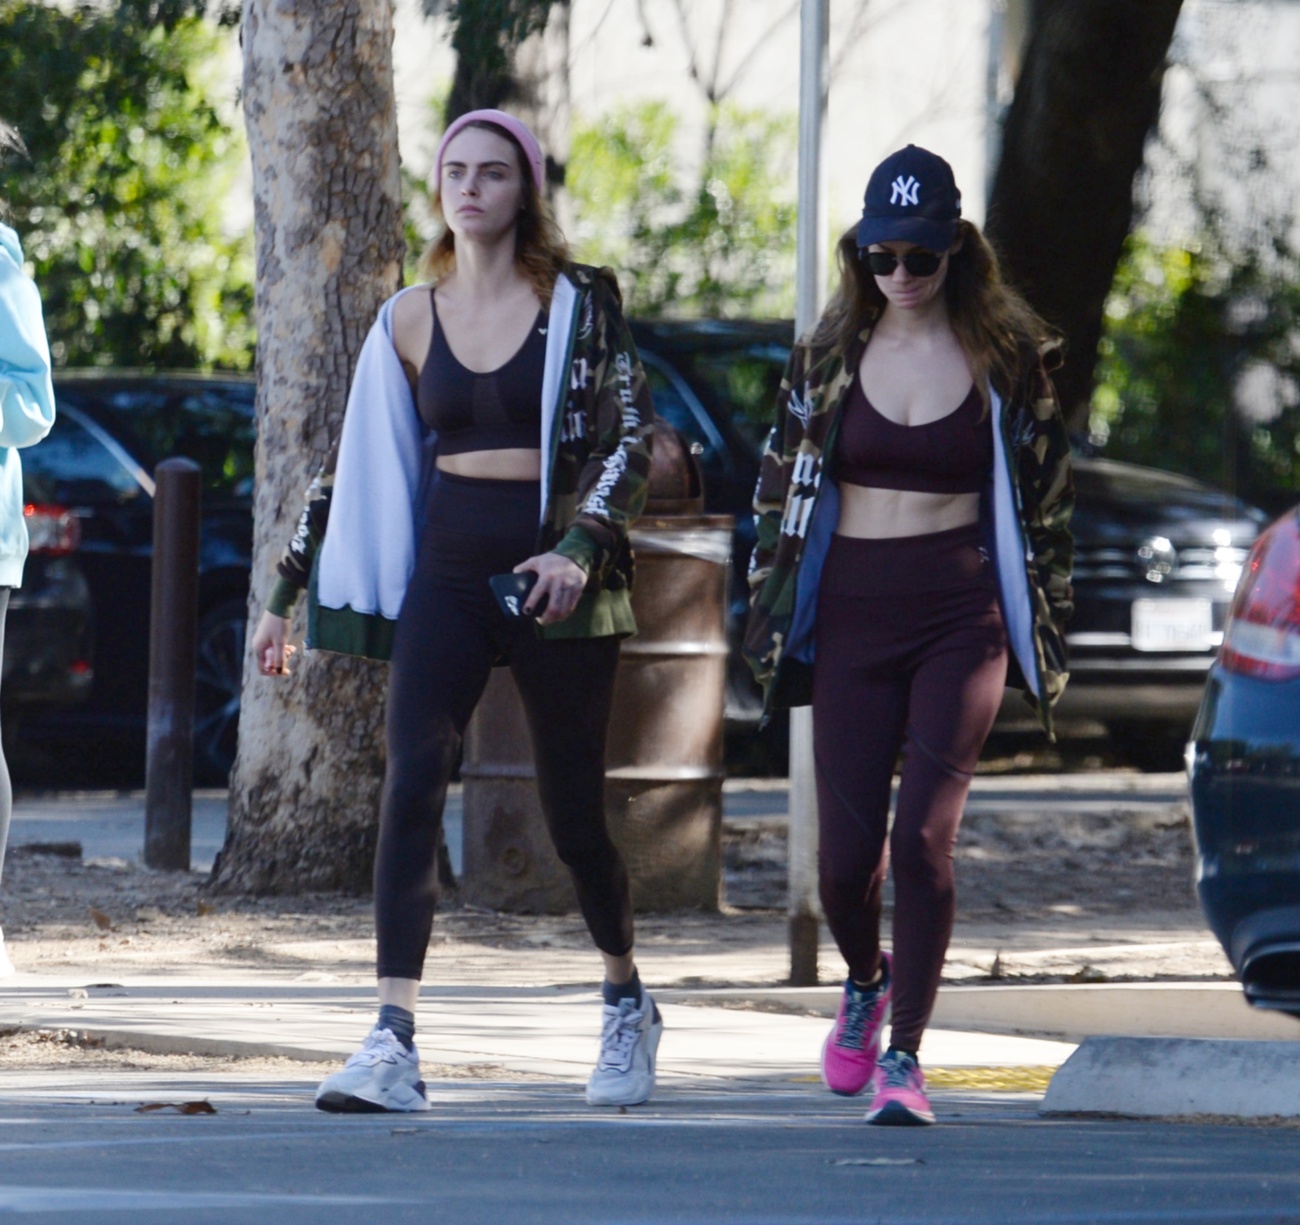 Schauspielerin und Model Cara Delevingne ist verliebt und sehr glücklich auf den Straßen von Los Angeles zu sehen